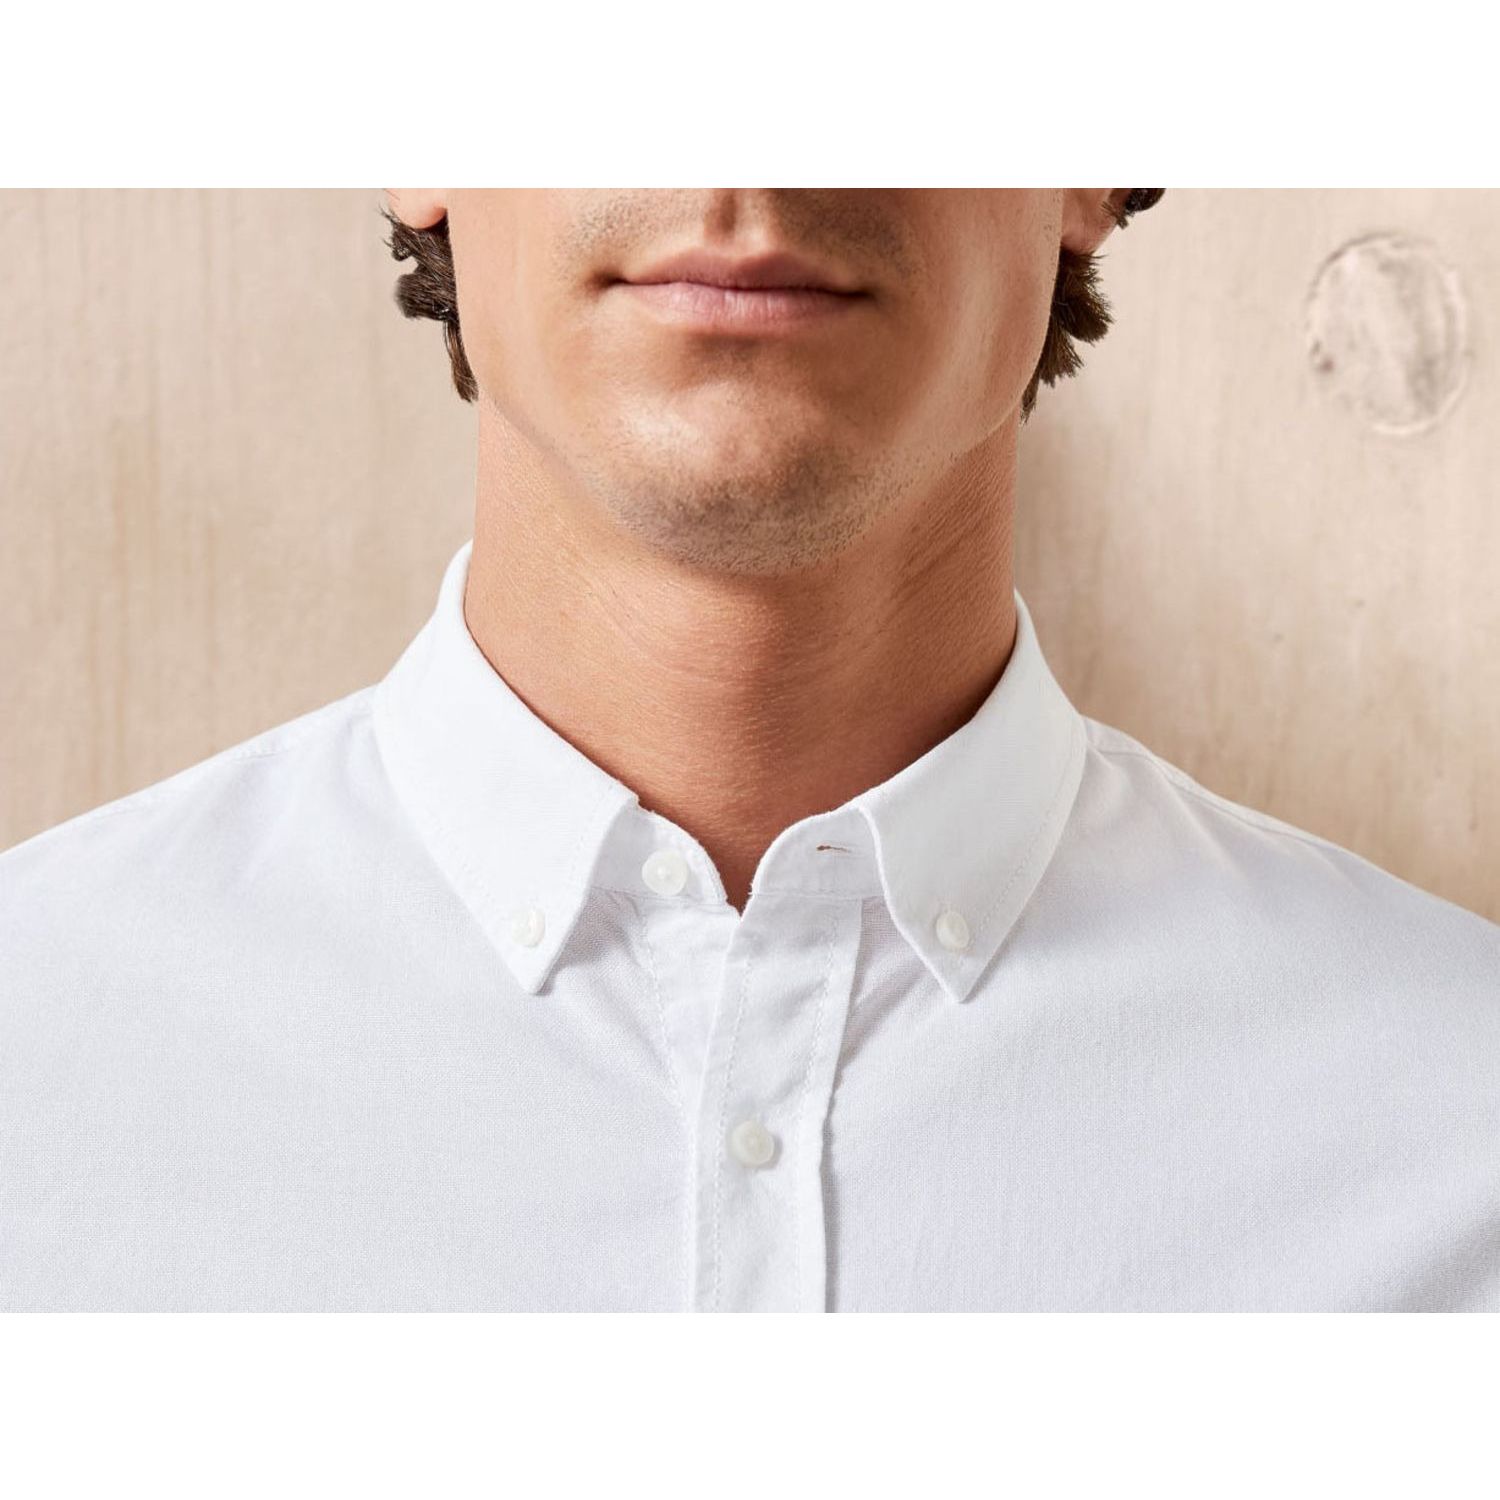 پیراهن آستین بلند مردانه لیورجی مدل استایل کد UP-Modern2022 رنگ سفید -  - 4